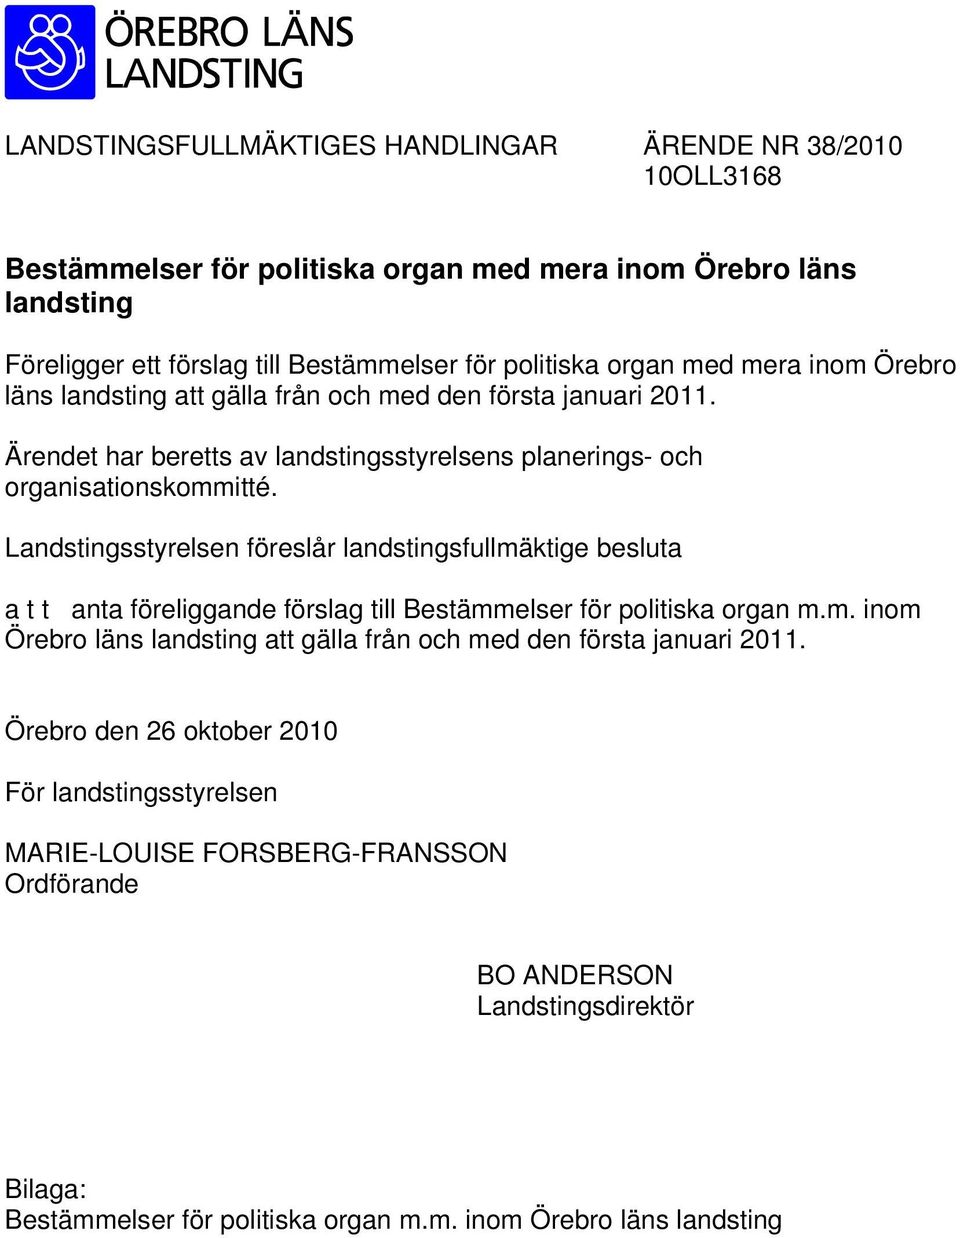 Landstingsstyrelsen föreslår landstingsfullmäktige besluta a t t anta föreliggande förslag till Bestämmelser för politiska organ m.m. inom Örebro läns landsting att gälla från och med den första januari 2011.